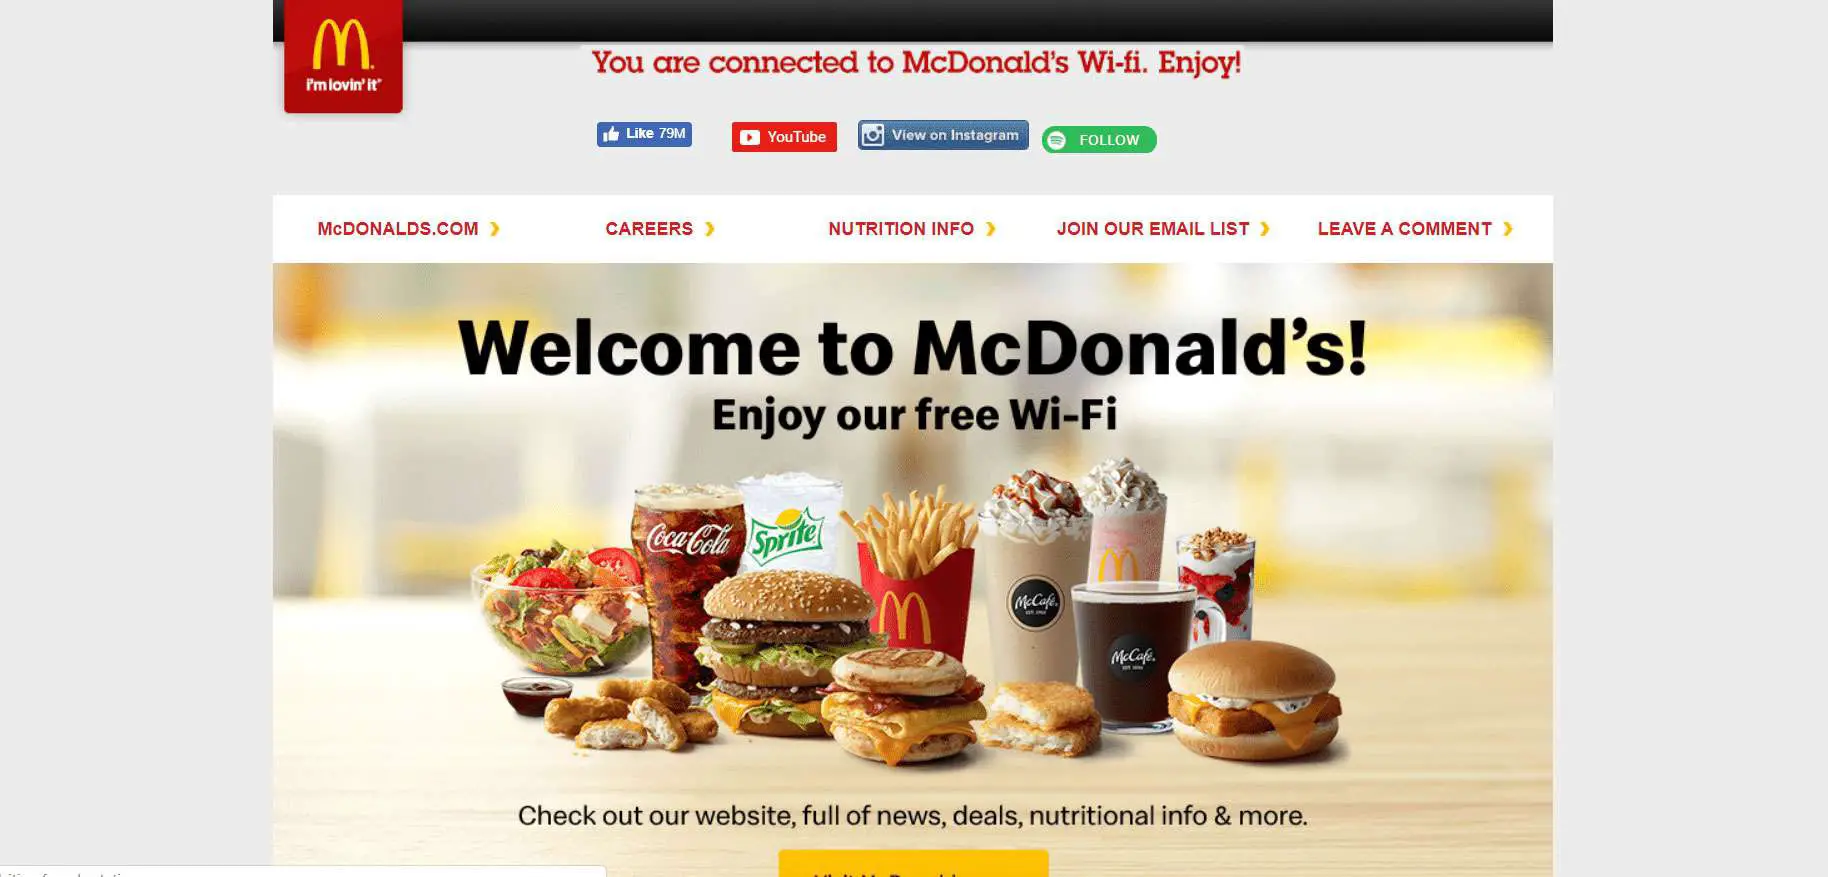 A página de boas-vindas do Wi-Fi do McDonald's